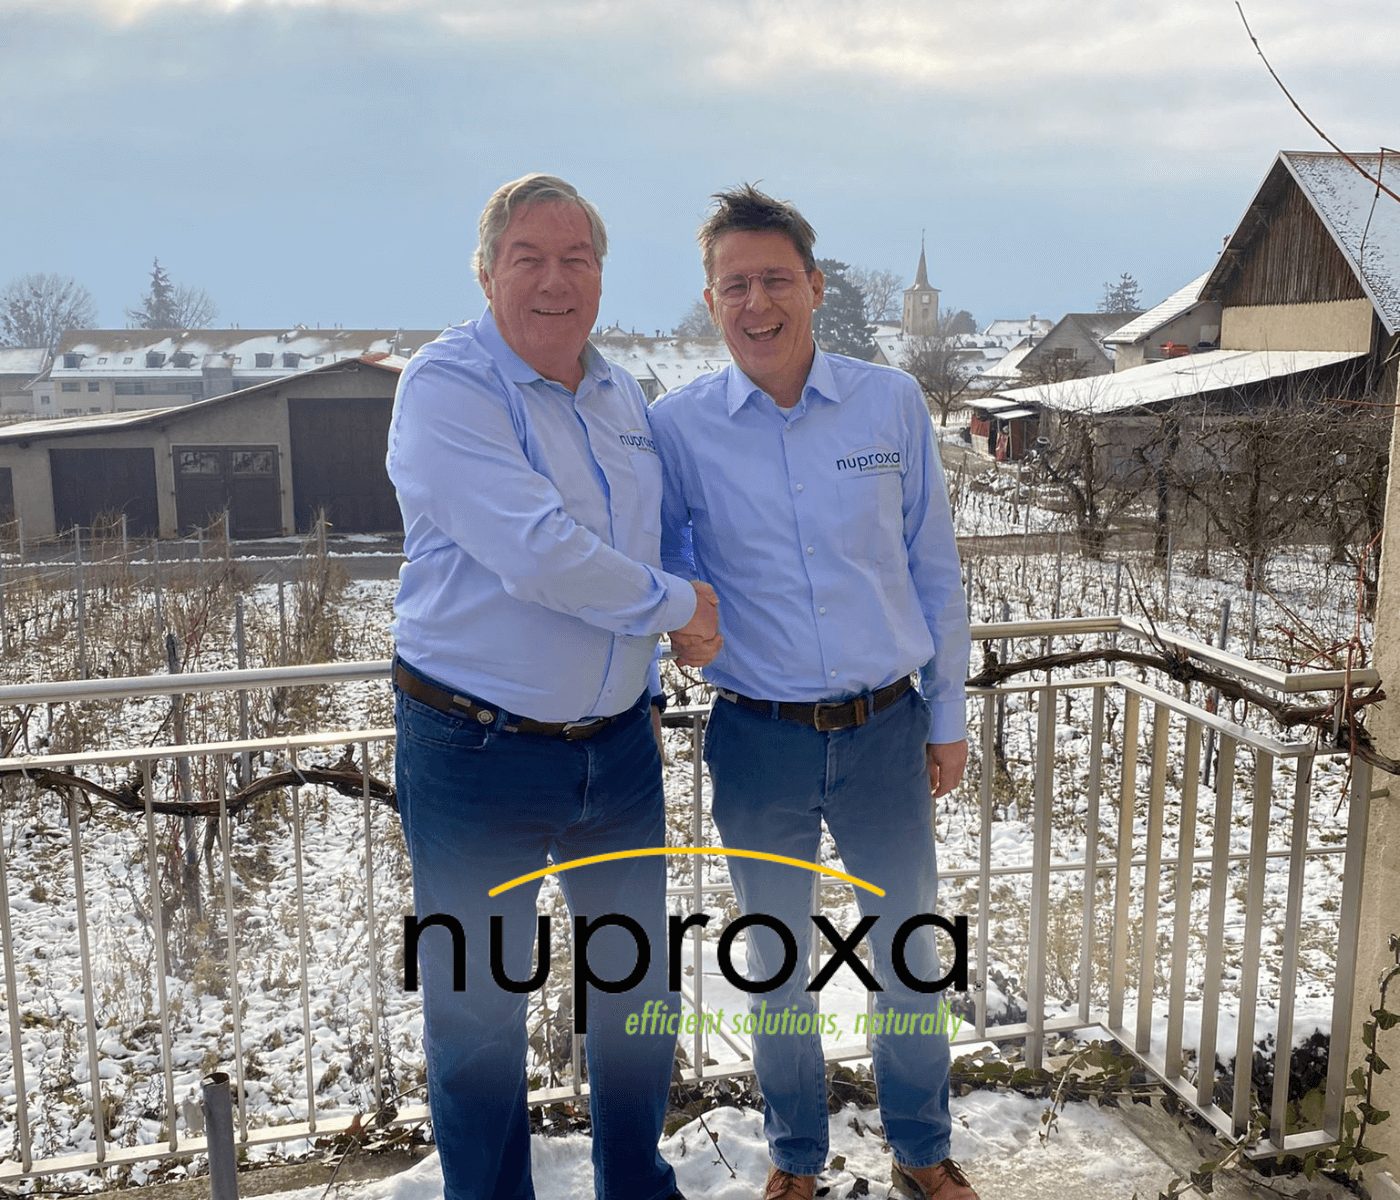 Nuproxa Group nomeia o Dr. Goetz Gotterbarm como CEO